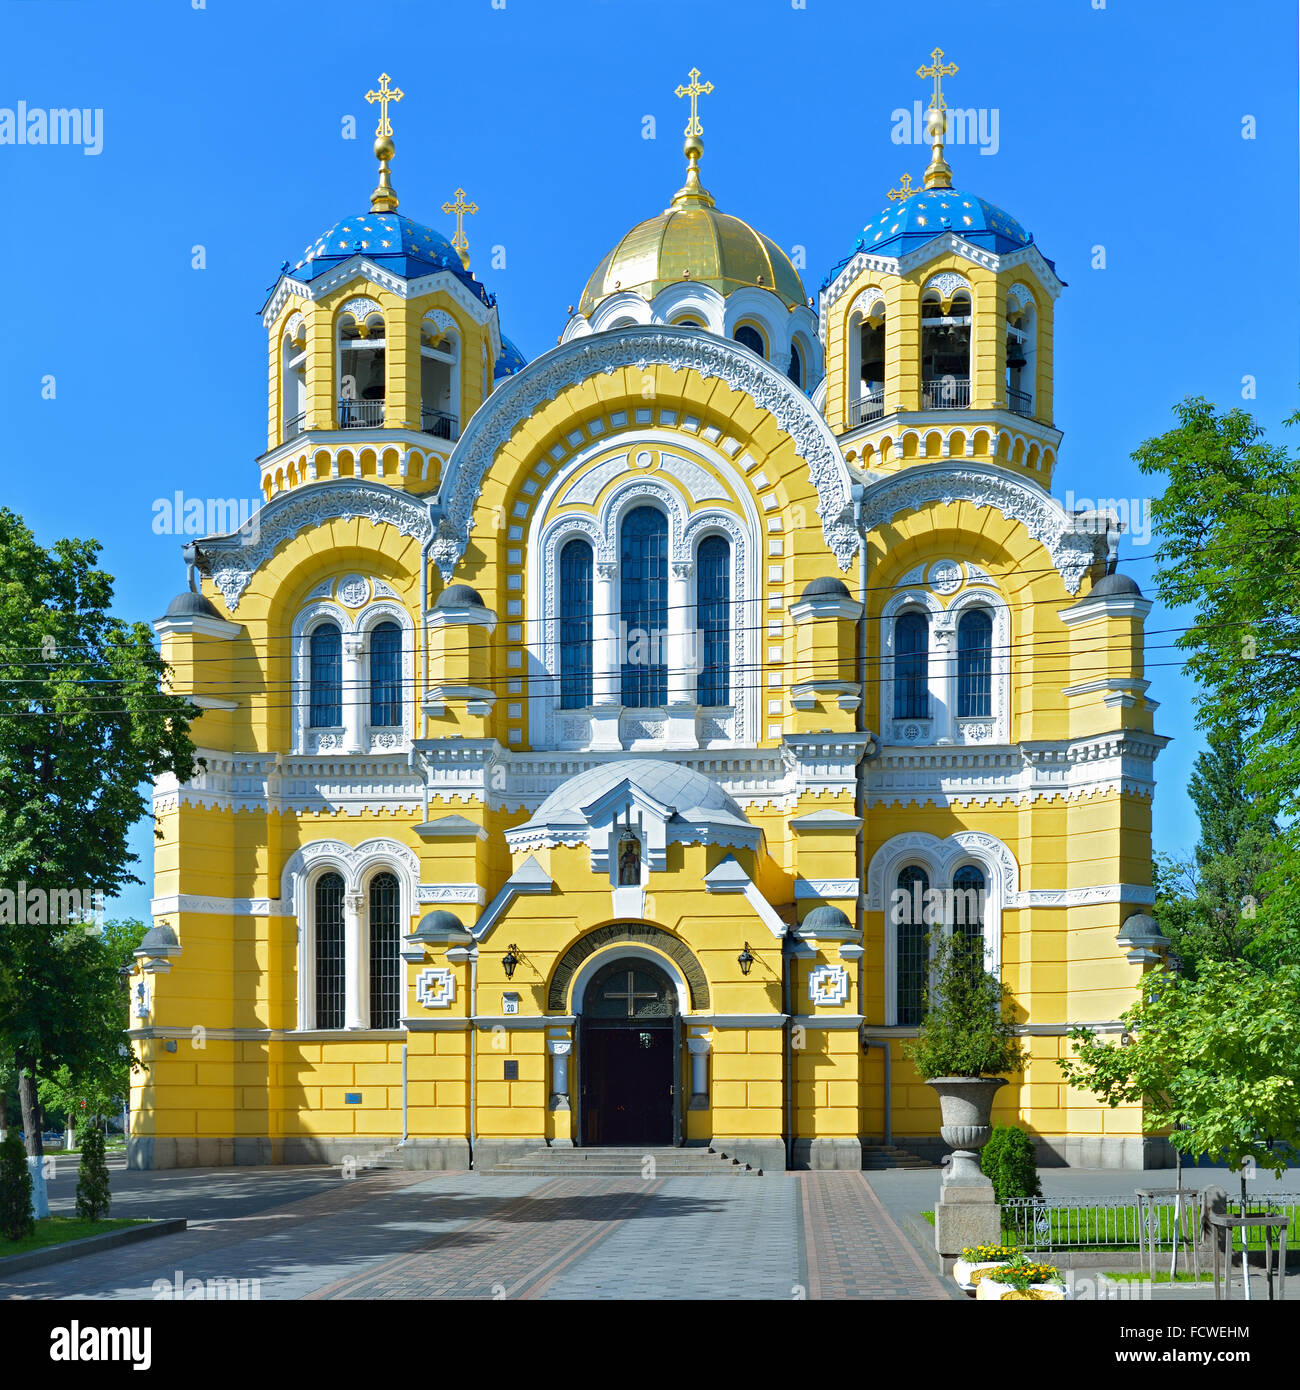 Vladimir nella cattedrale di Kiev contro il cielo blu. Capitale dell'Ucraina - Kiev. Foto Stock